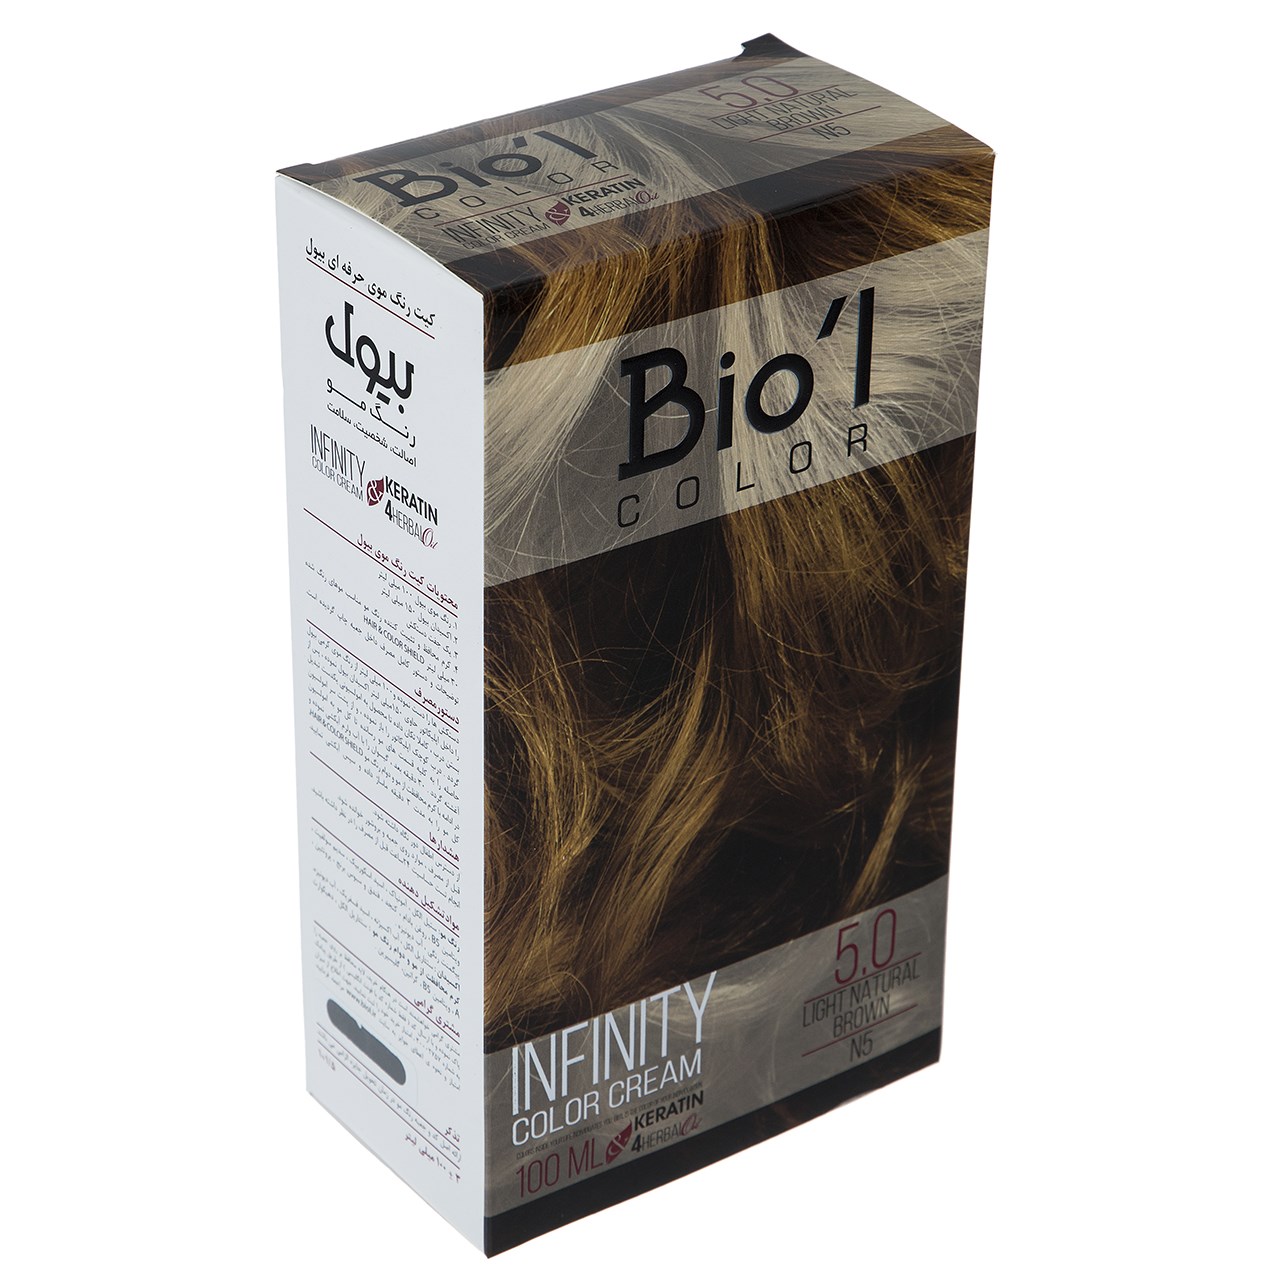 کیت رنگ موی Bio'l شماره 5.0 قهوه ای روشن